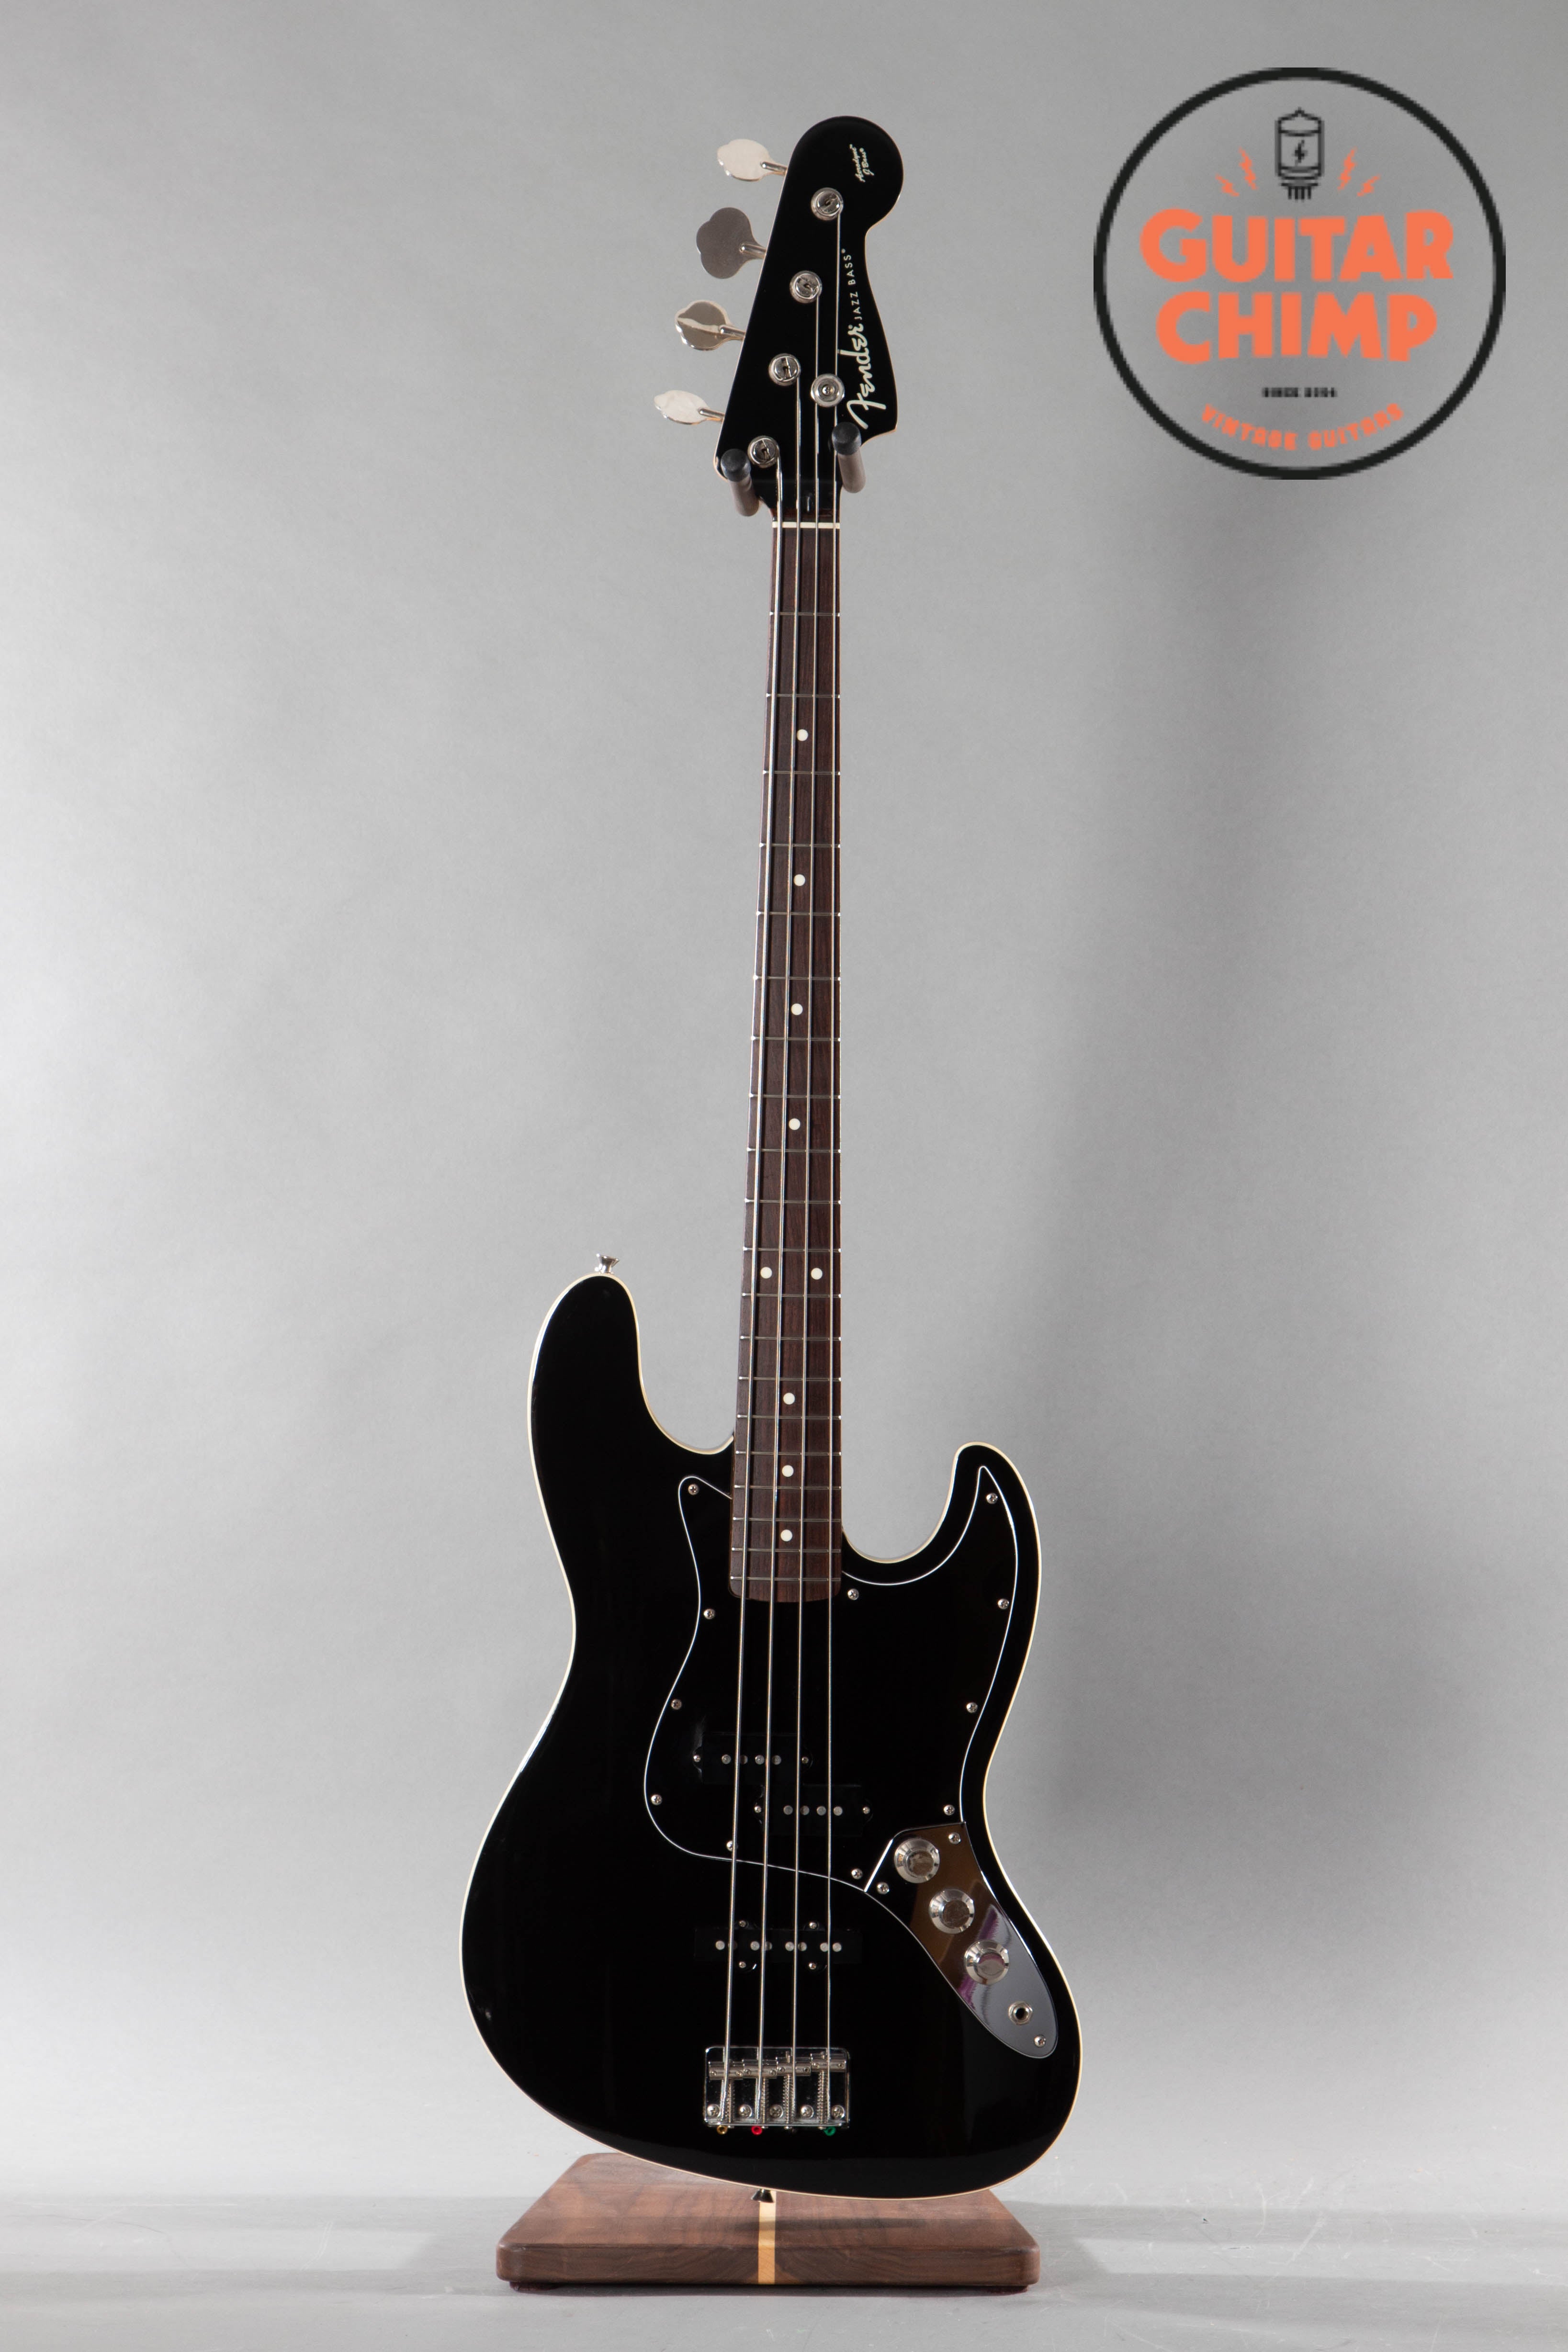 2006 Fender Japan Aerodyne Jazz Bass AJB-66 Black | Guitar Chimp